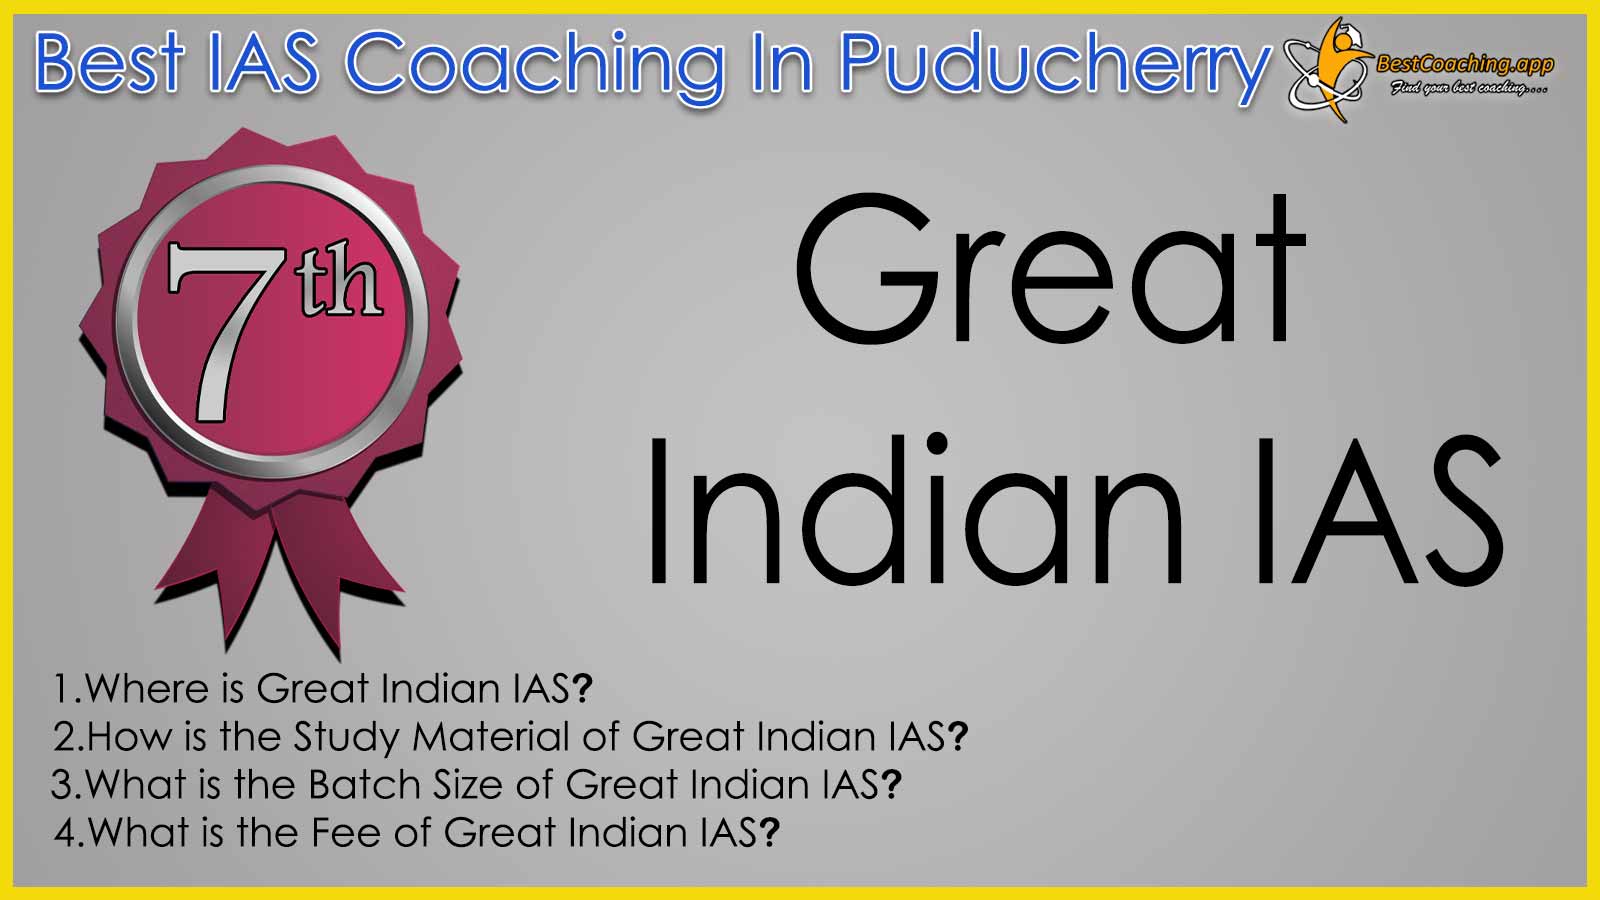 Great Indian IAS Coaching